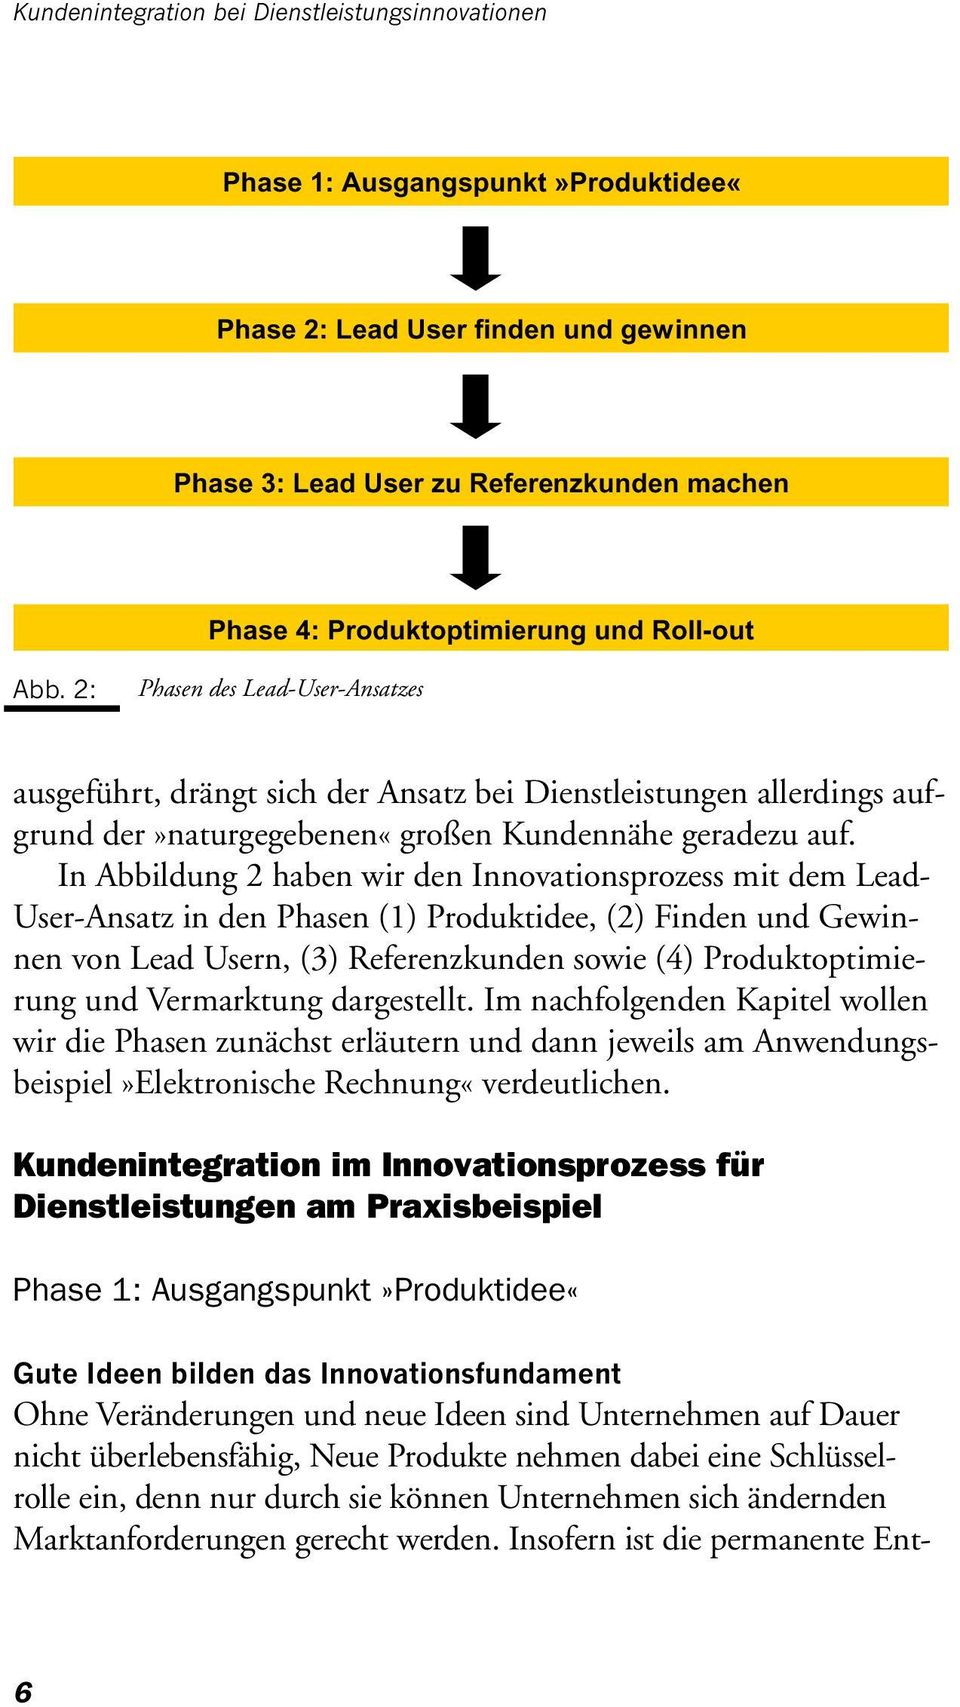 In Abbildung 2 haben wir den Innovationsprozess mit dem Lead- User-Ansatz in den Phasen (1) Produktidee, (2) Finden und Gewinnen von Lead Usern, (3) Referenzkunden sowie (4) Produktoptimierung und